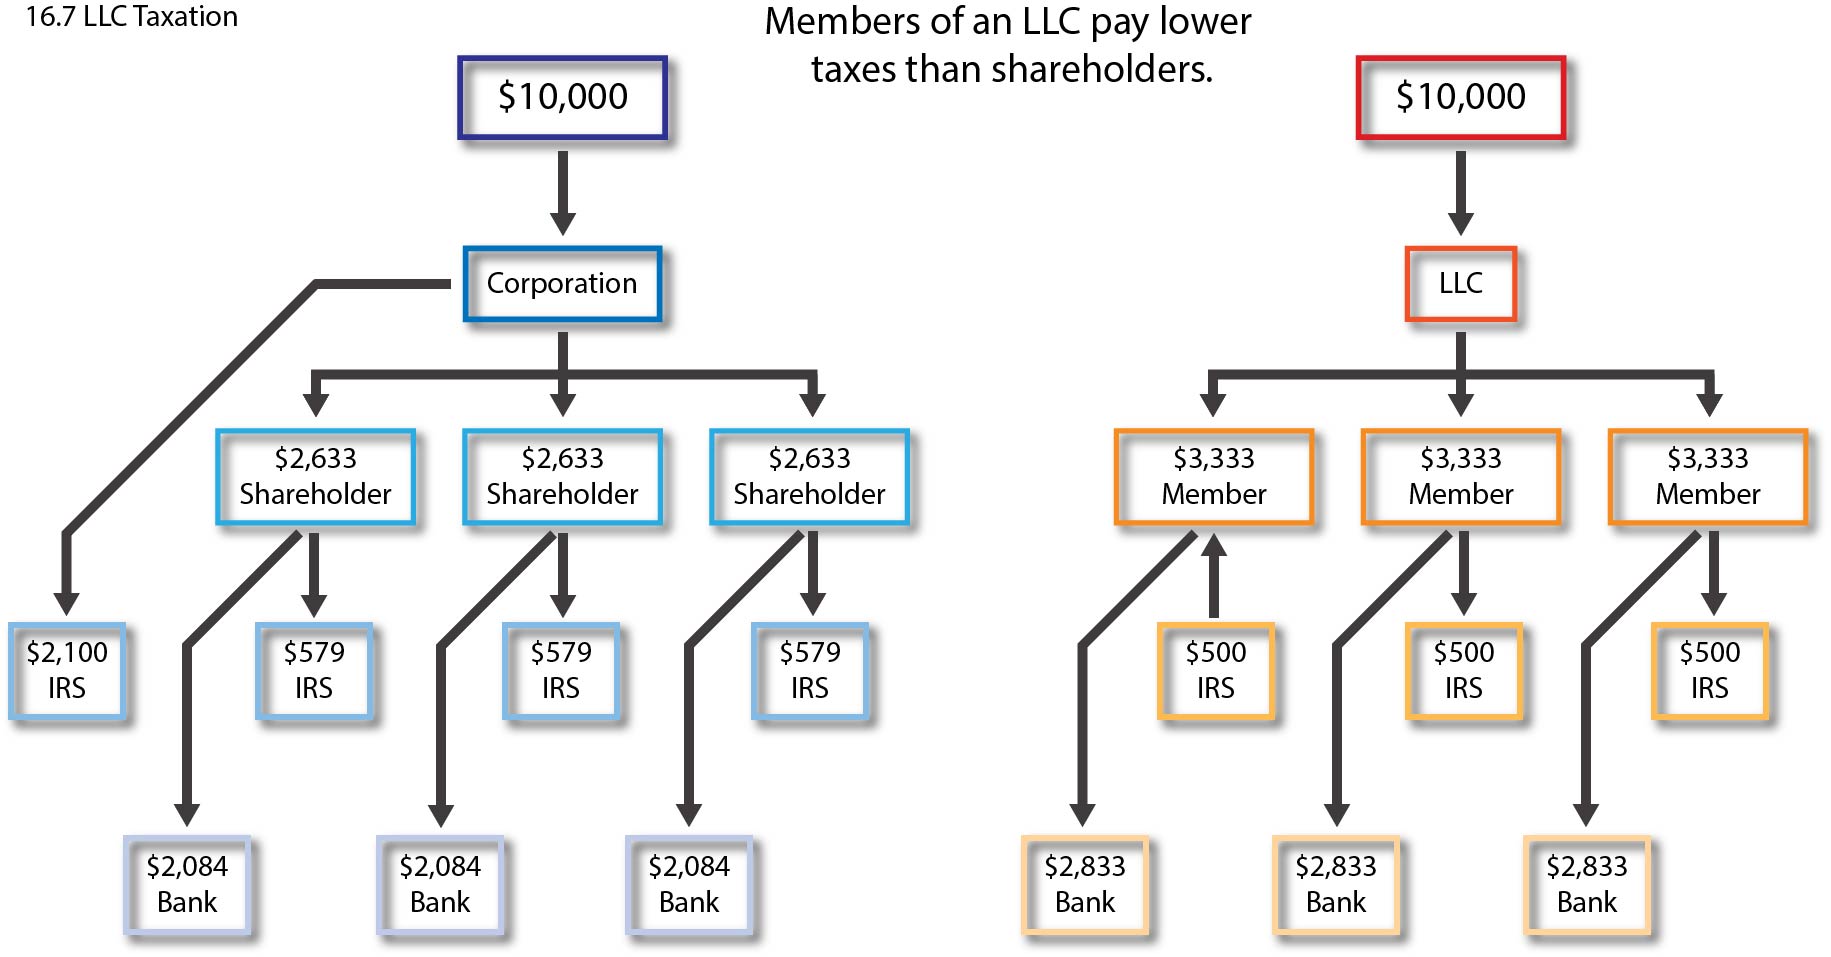 Gráfico que muestra que los miembros de una LLC pagan impuestos más bajos que los accionistas corporativos